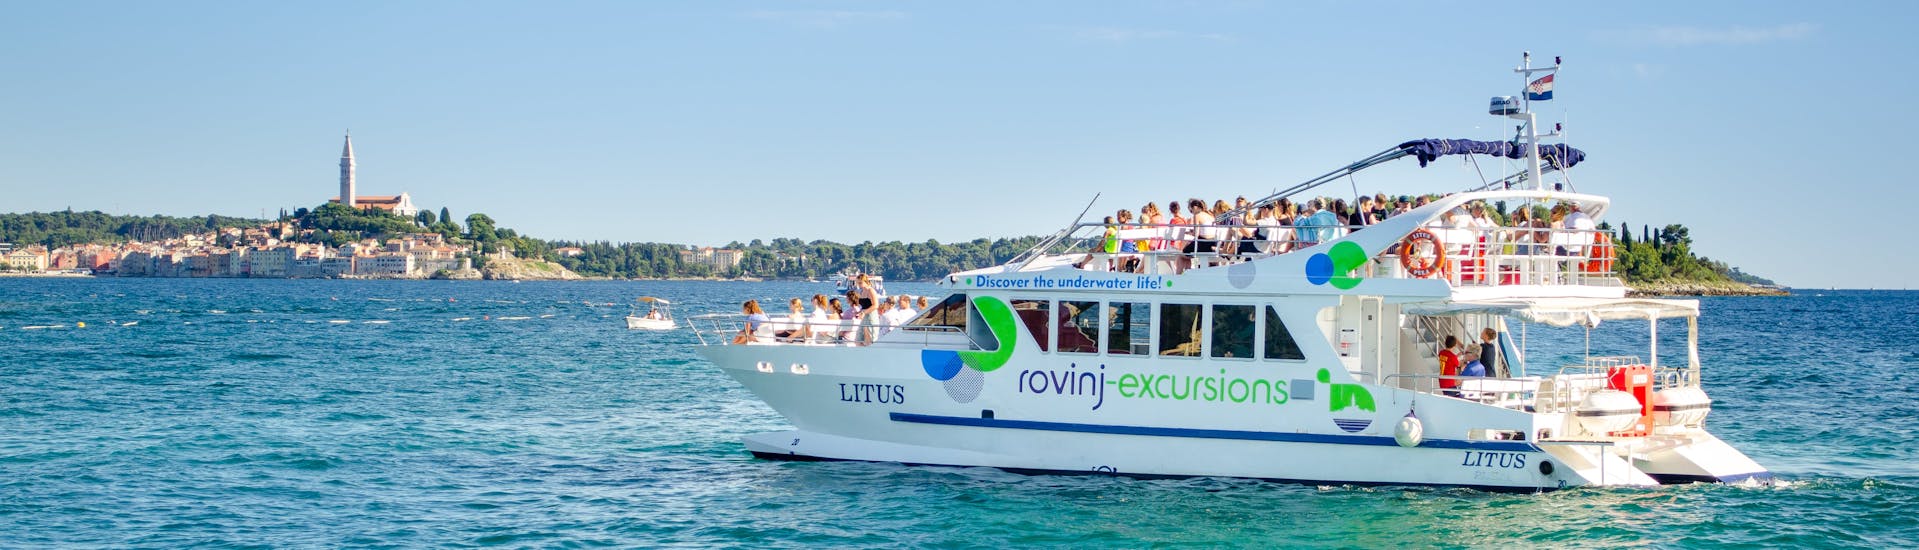 De boot LITUS in het kristalheldere water van Istrië tijdens de Sunset Catamaran Trip rond Rovinj met dolfijnen spotten met Rovinj Excursions.